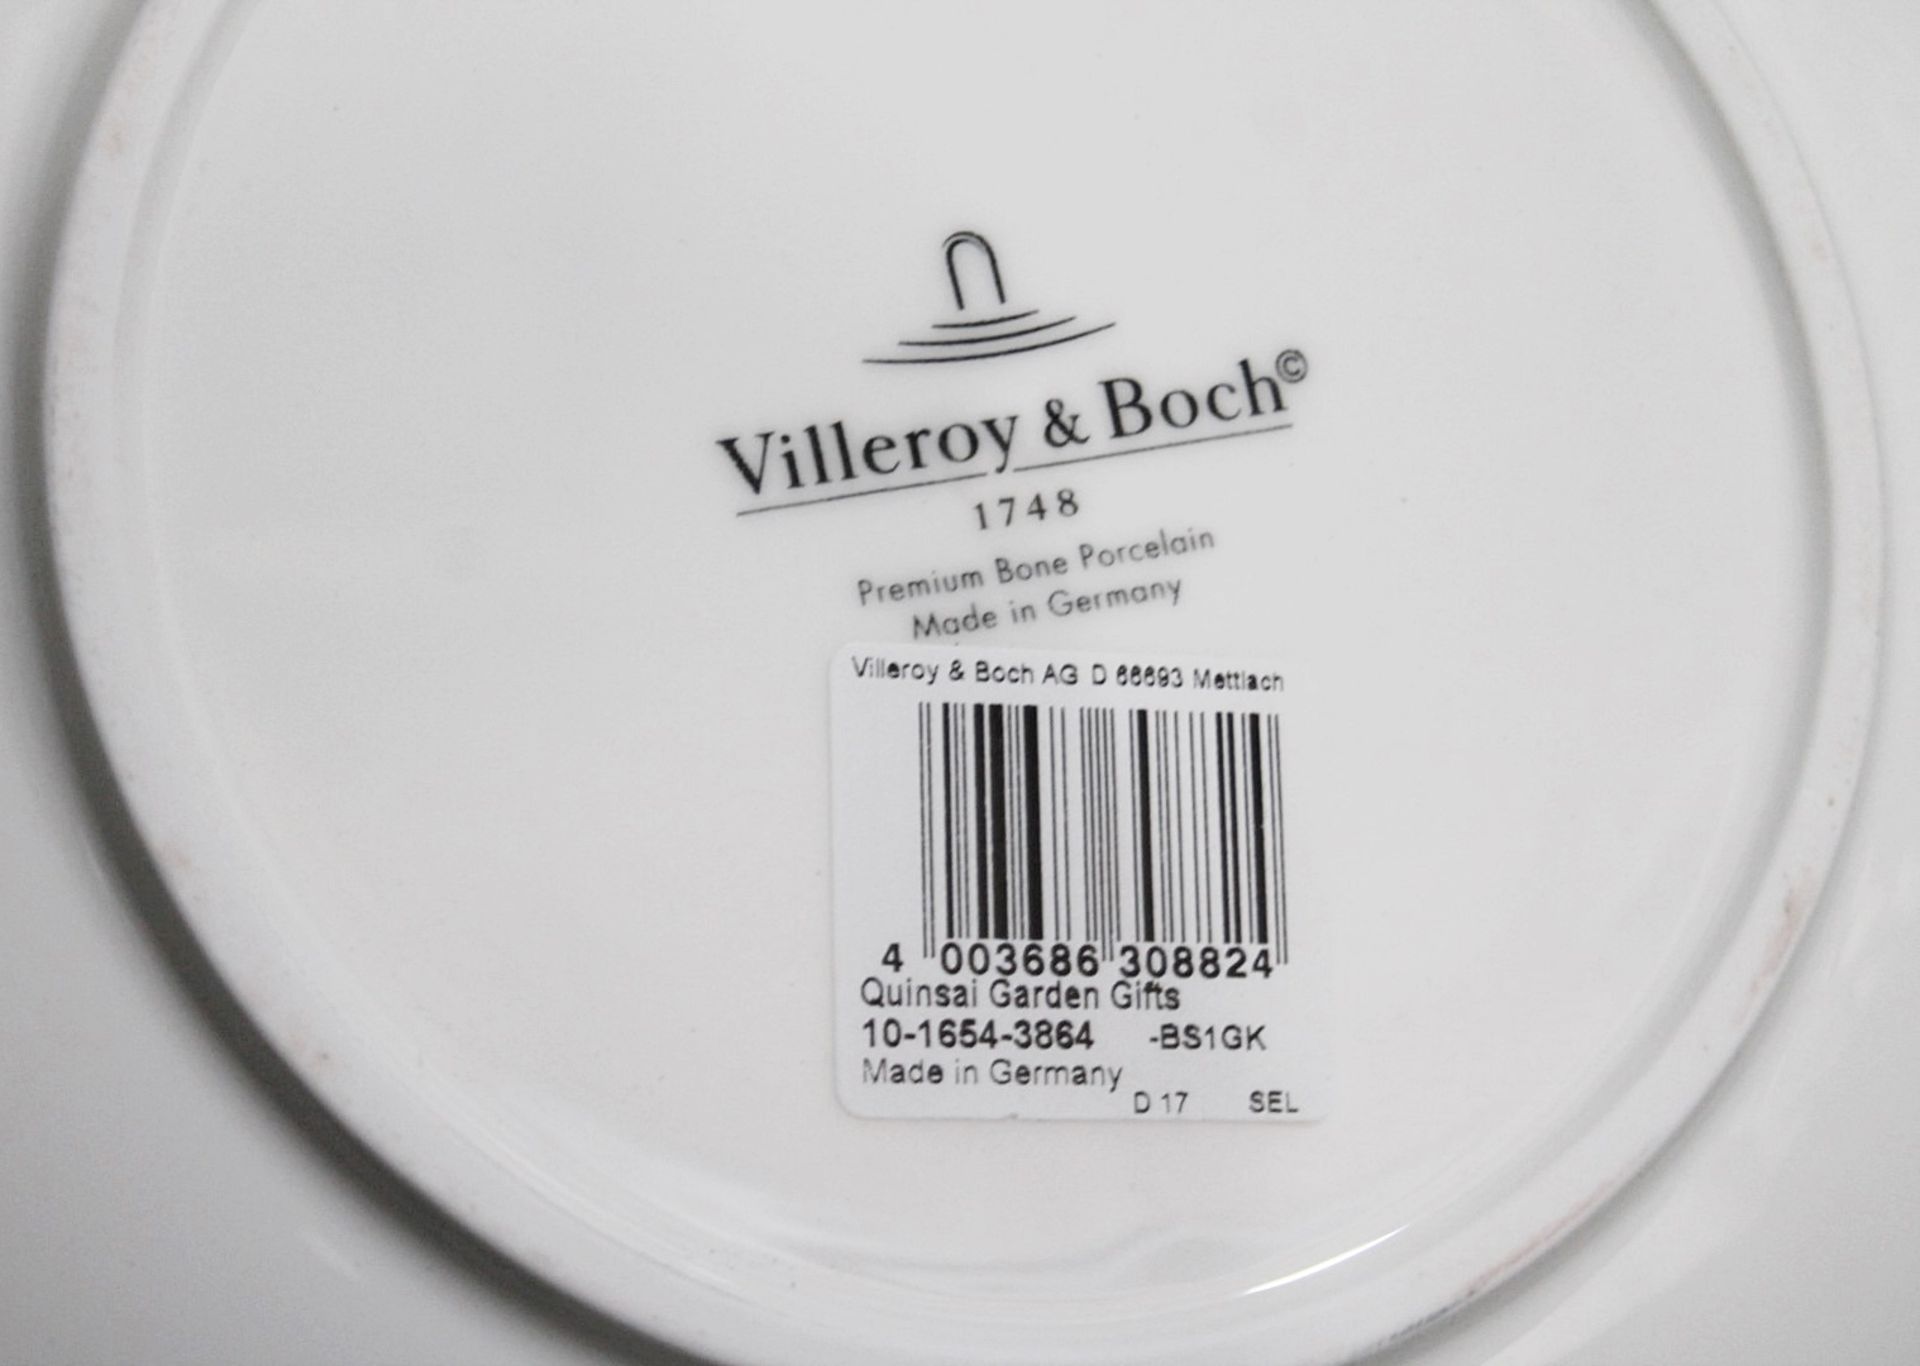 1 x VILLEROY & BOCH SIGNATURE - Premium Bone Porcelain 'Quinsai Garden' Fruit Bowl - RRP £238.00 - Image 5 of 7